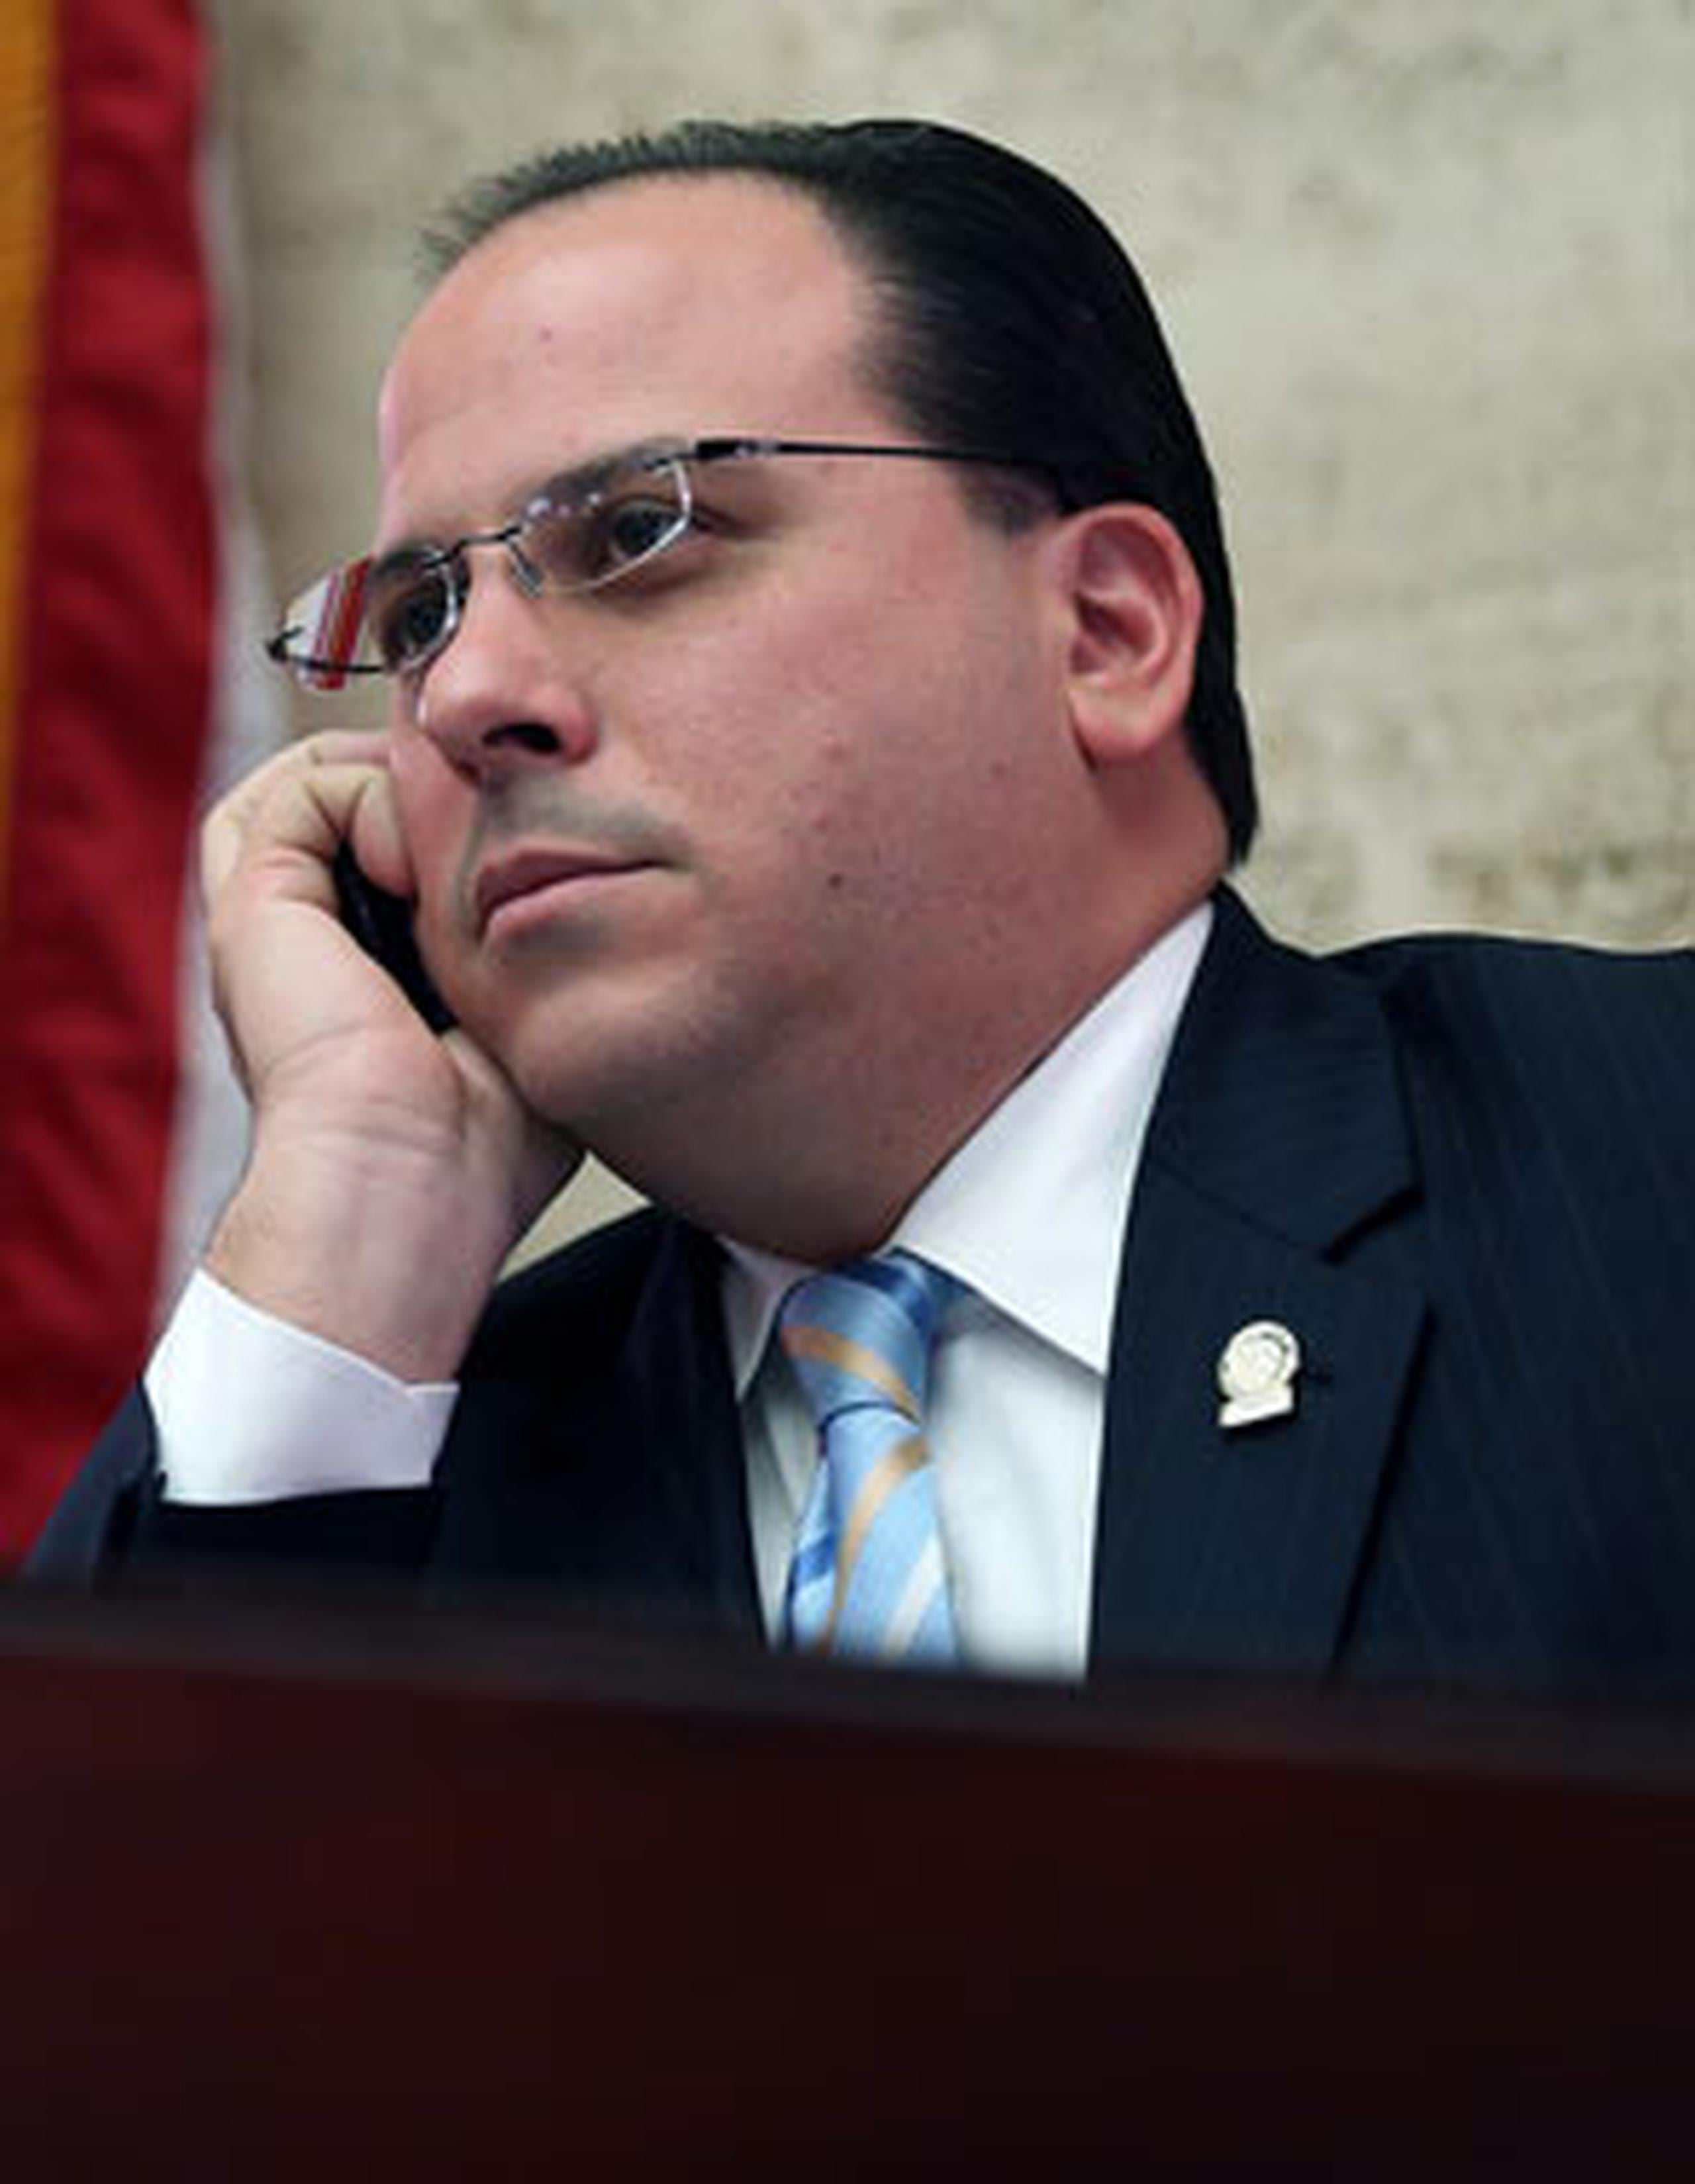 Jaime Perelló, presidente de la Cámara de Representantes